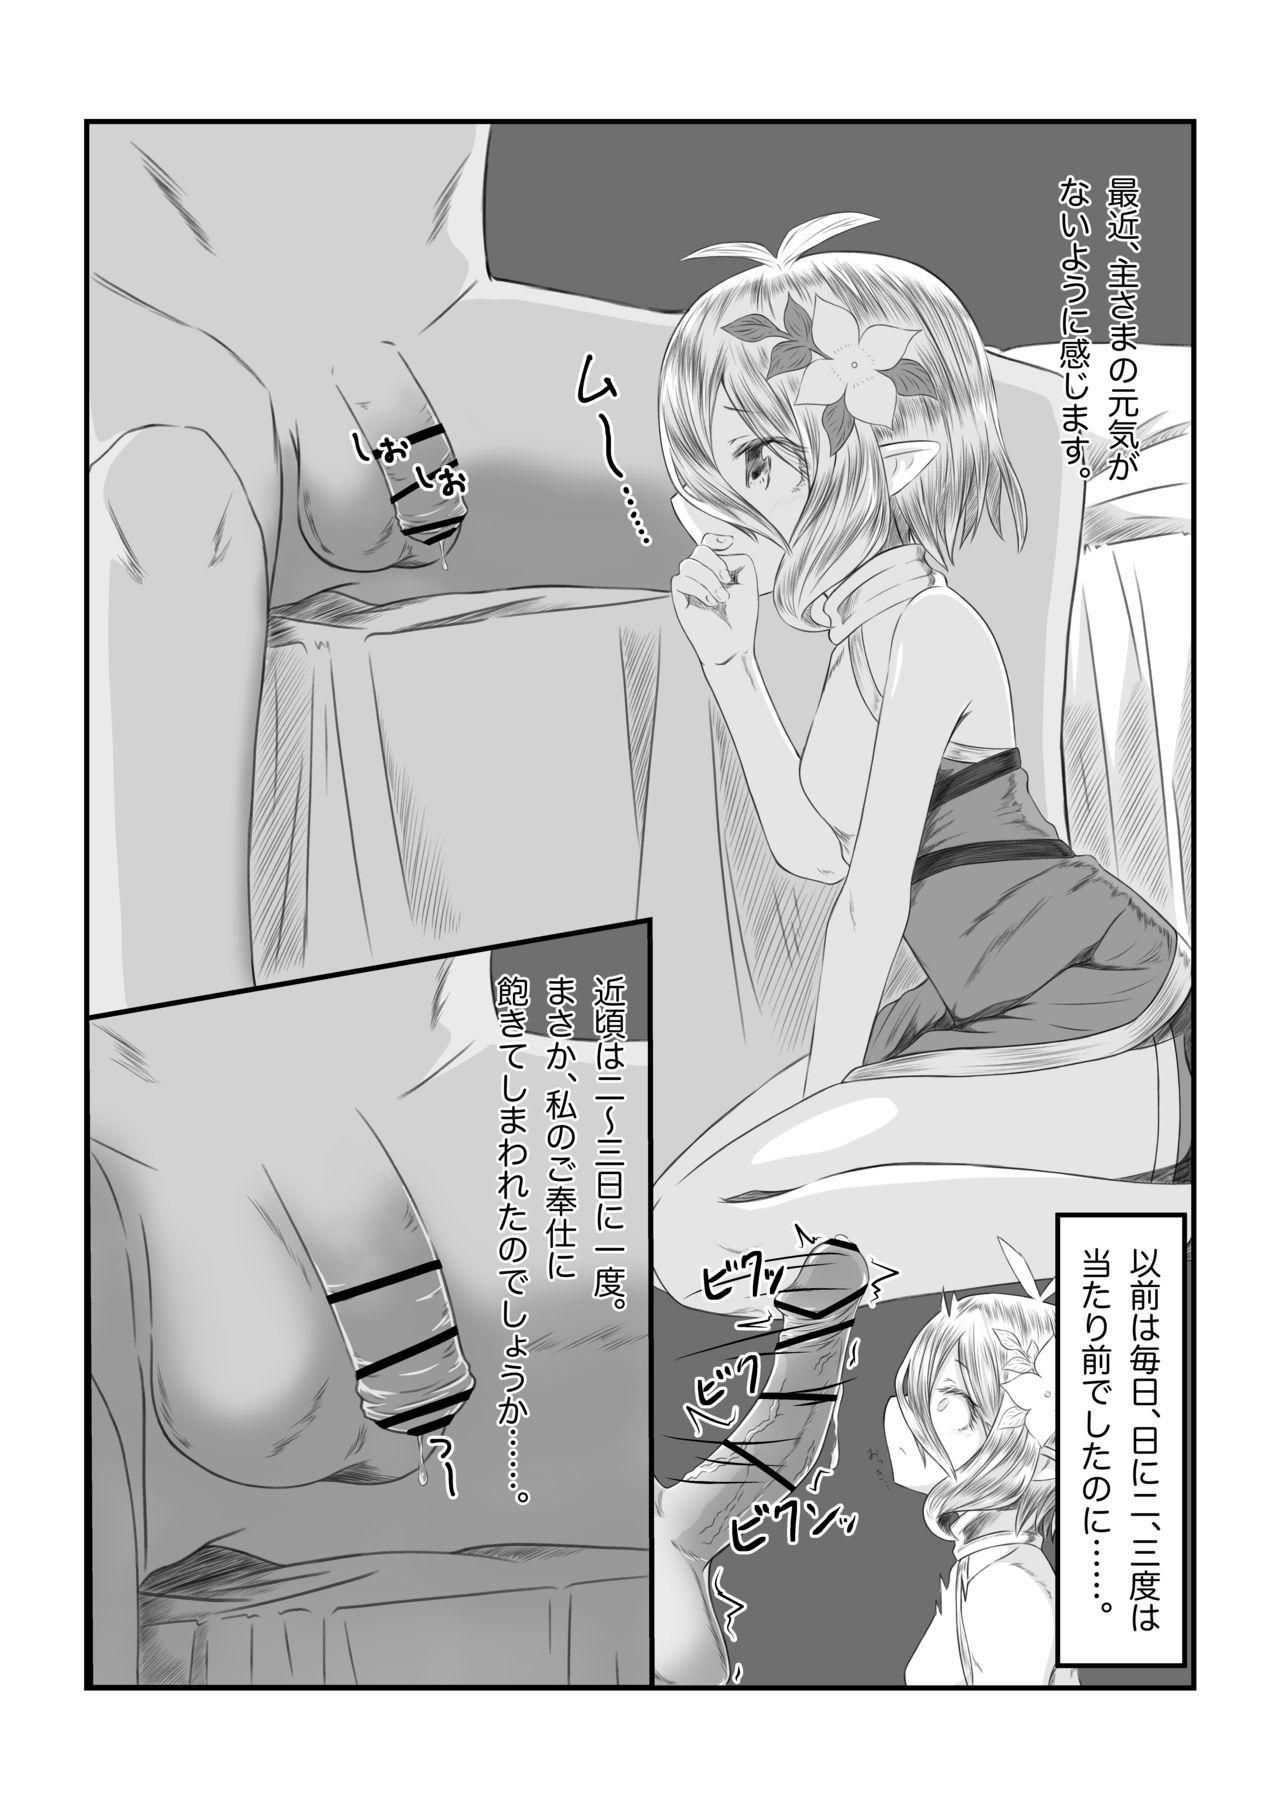 Sluts Sore wa amesu-sama ni kinshi sa rete imasu - Princess connect Seduction - Page 3